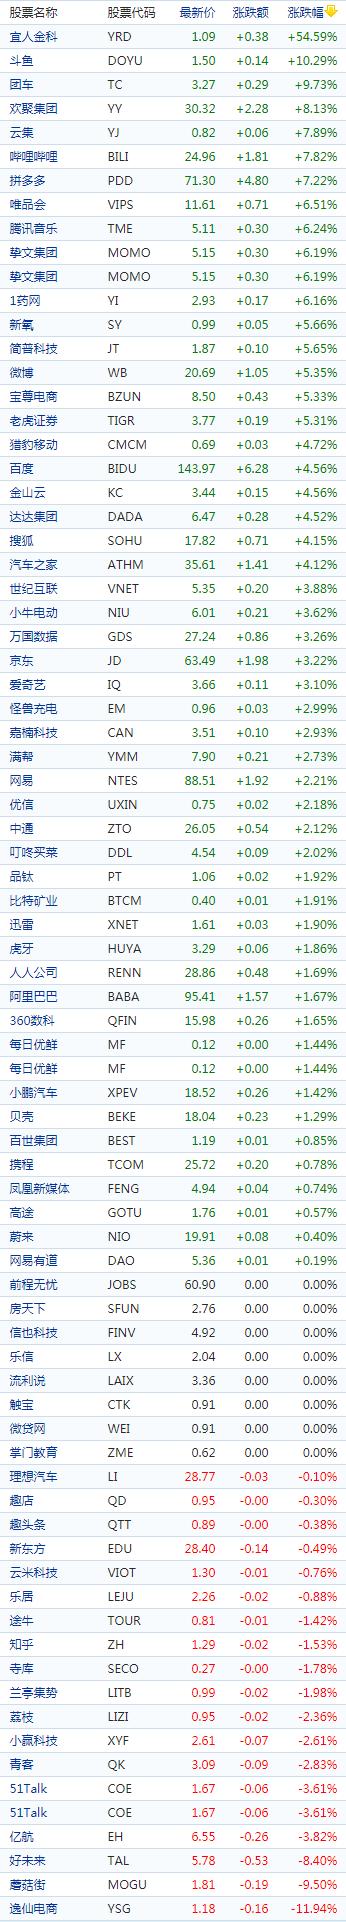 中国概念股收盘：斗鱼涨逾10%，蘑菇街跌超10%、逸仙电商跌近12%